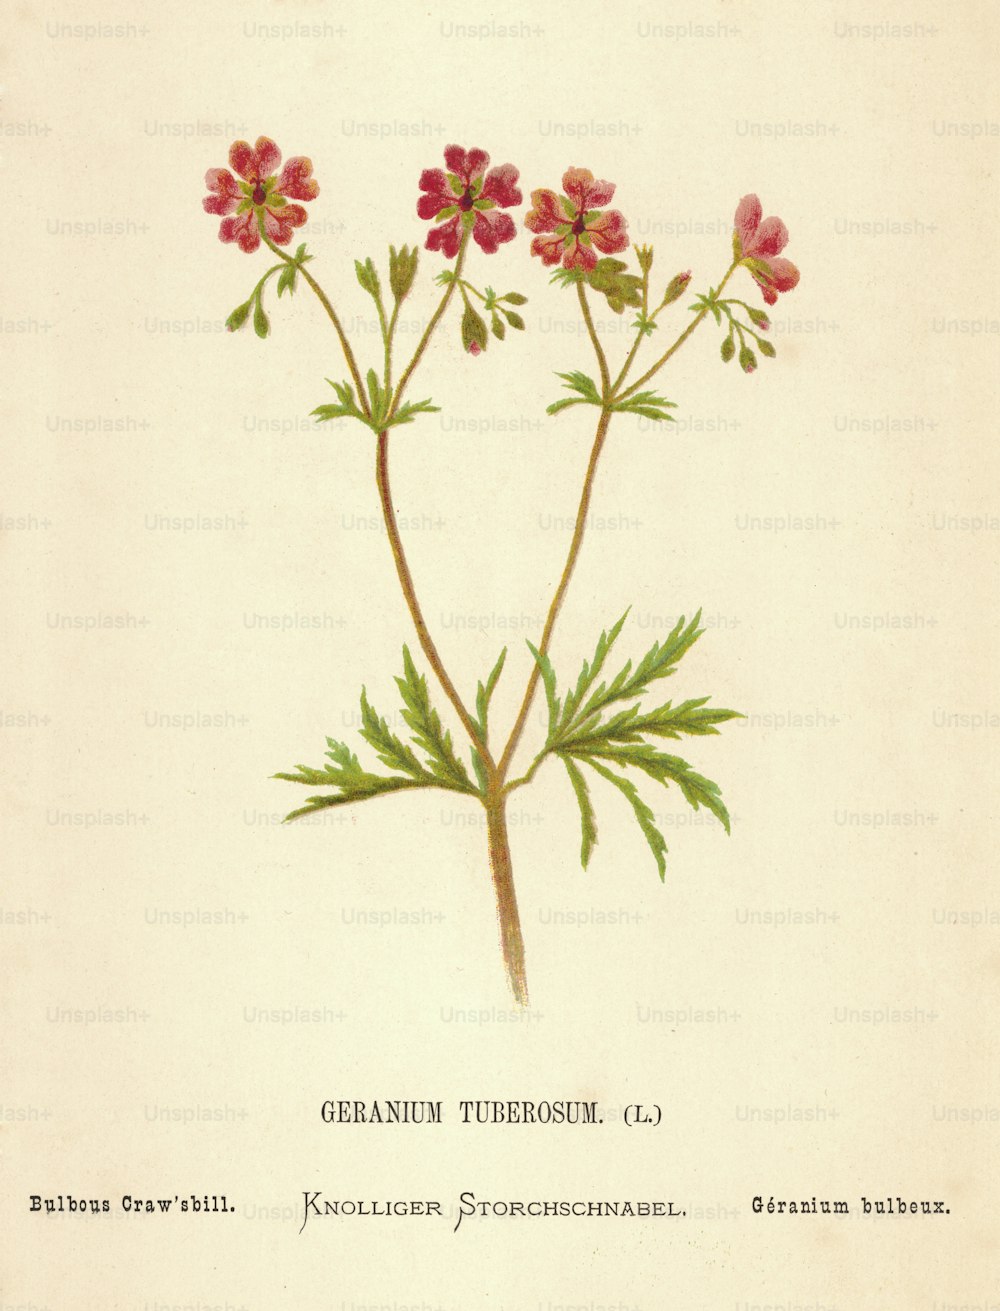 Ein roter Geranium tuberosum oder Bulbous Craw'sbill, um 1850. (Foto von Hulton Archive / Getty Images)